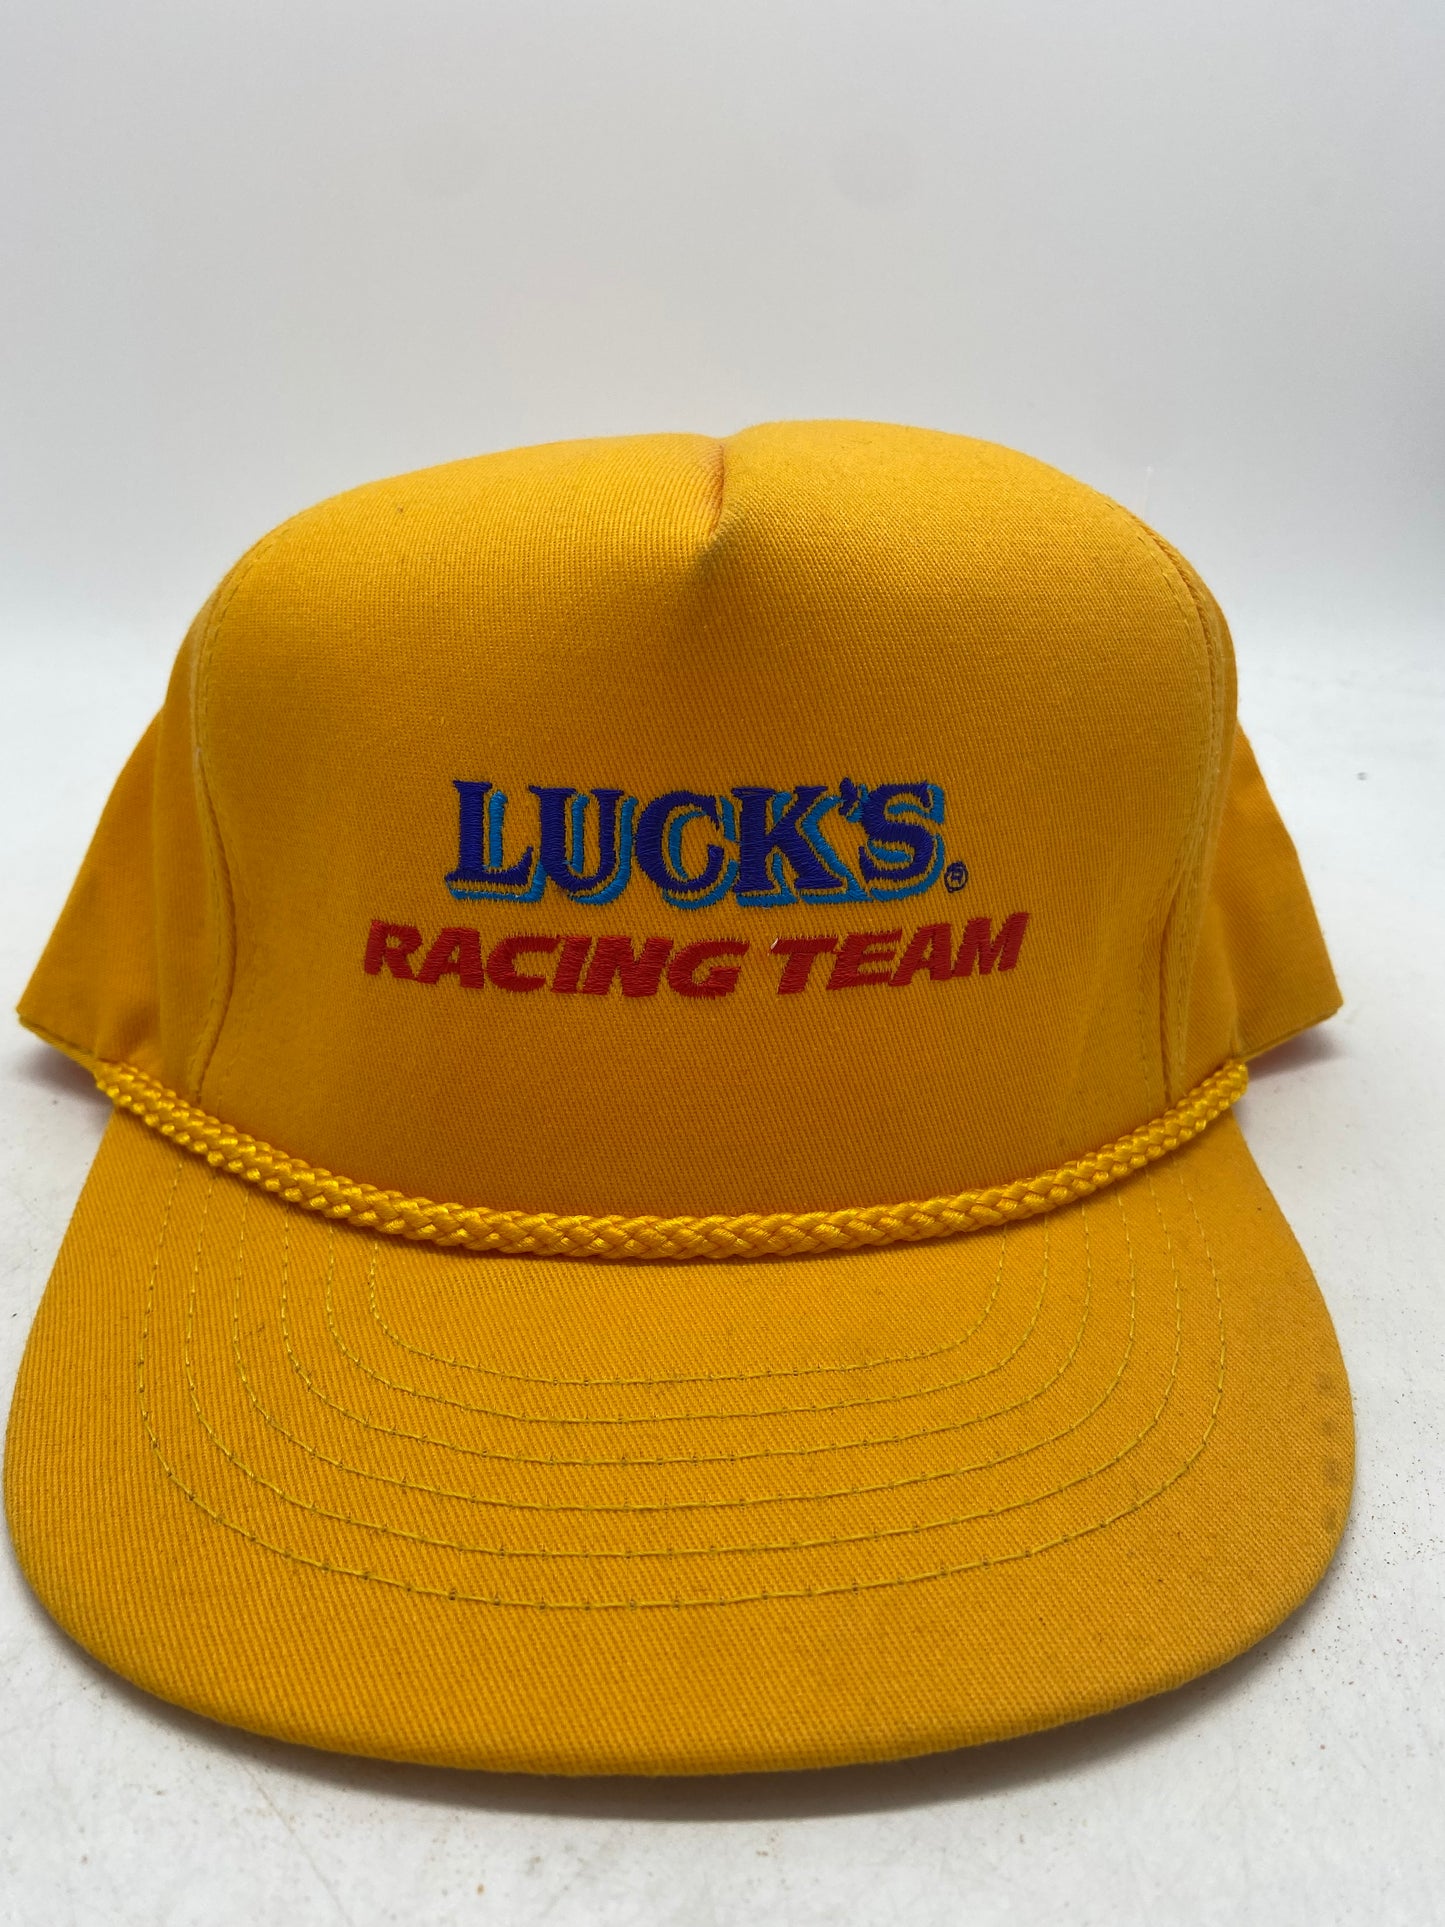 VTG Luck's Racing Team Trucker Snapback